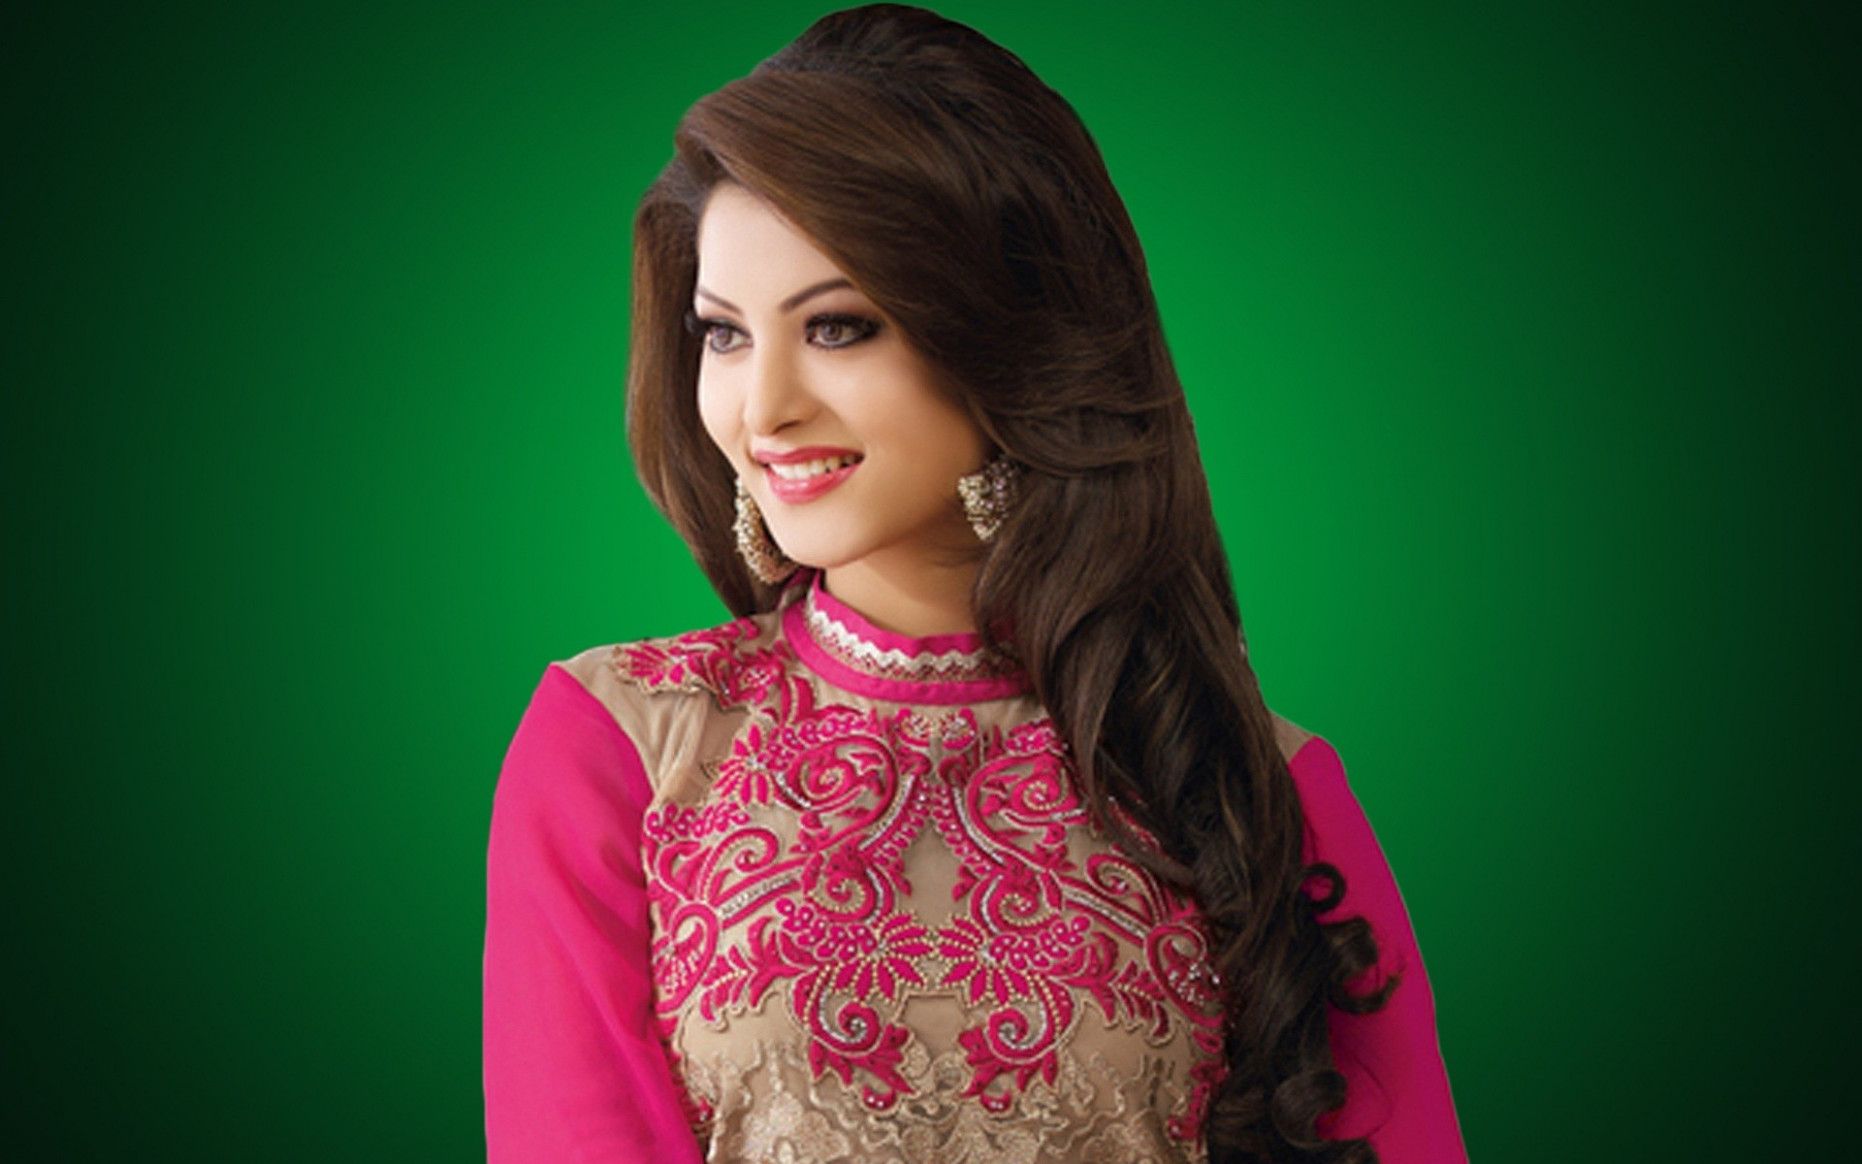 HD Wallpaper of Bollywood Actress